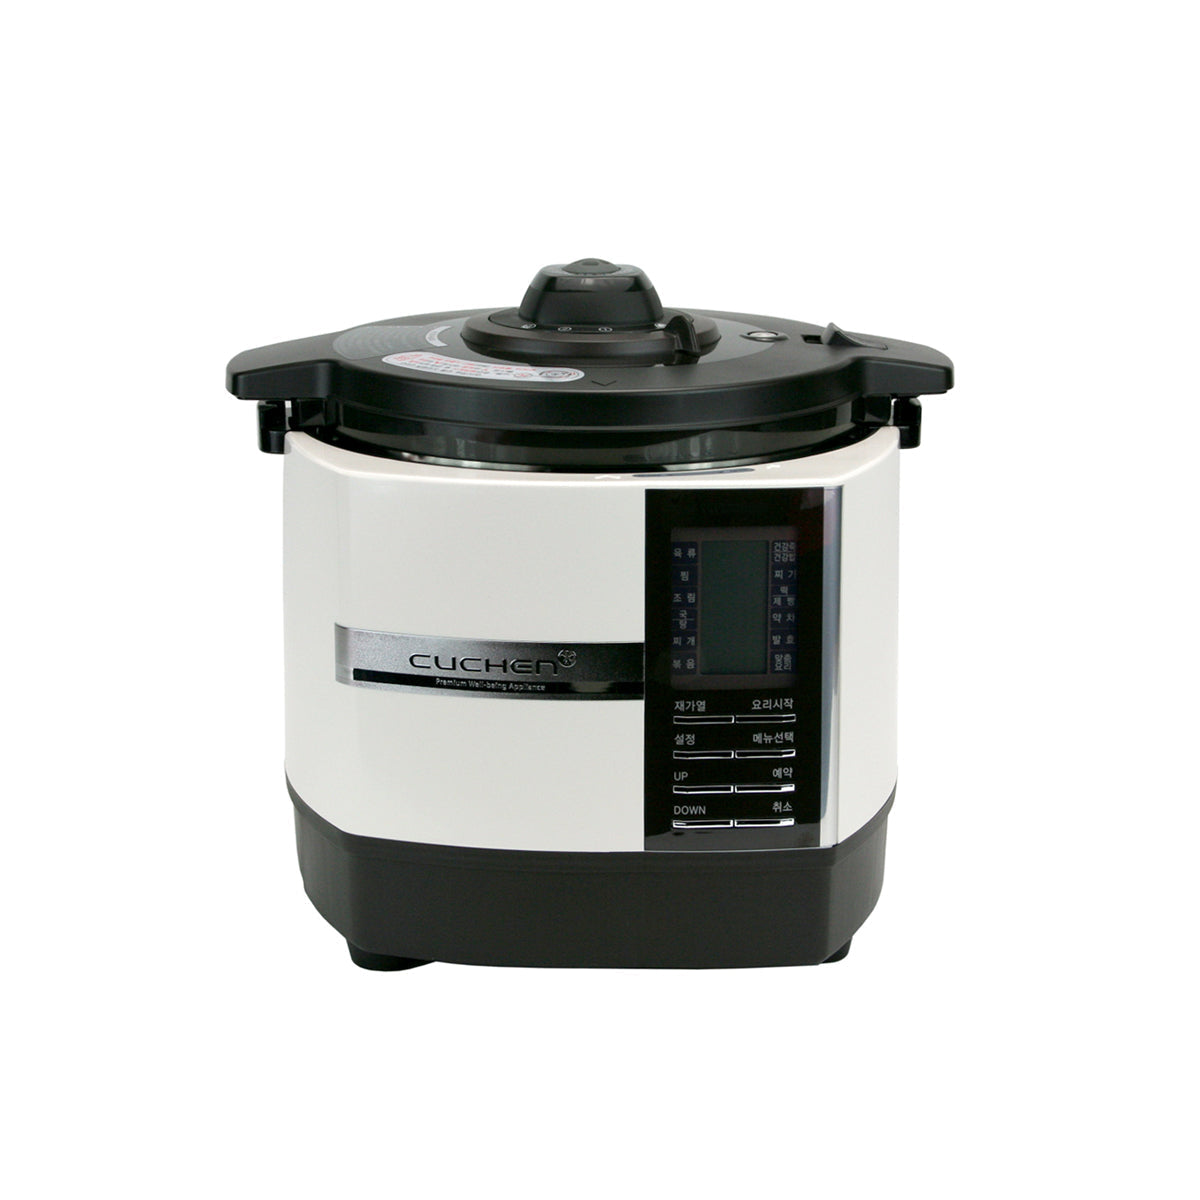 Cuchen Smart Multi Pressure Rice Cooker CK-P181/I (6Cup) White - Cuchen US